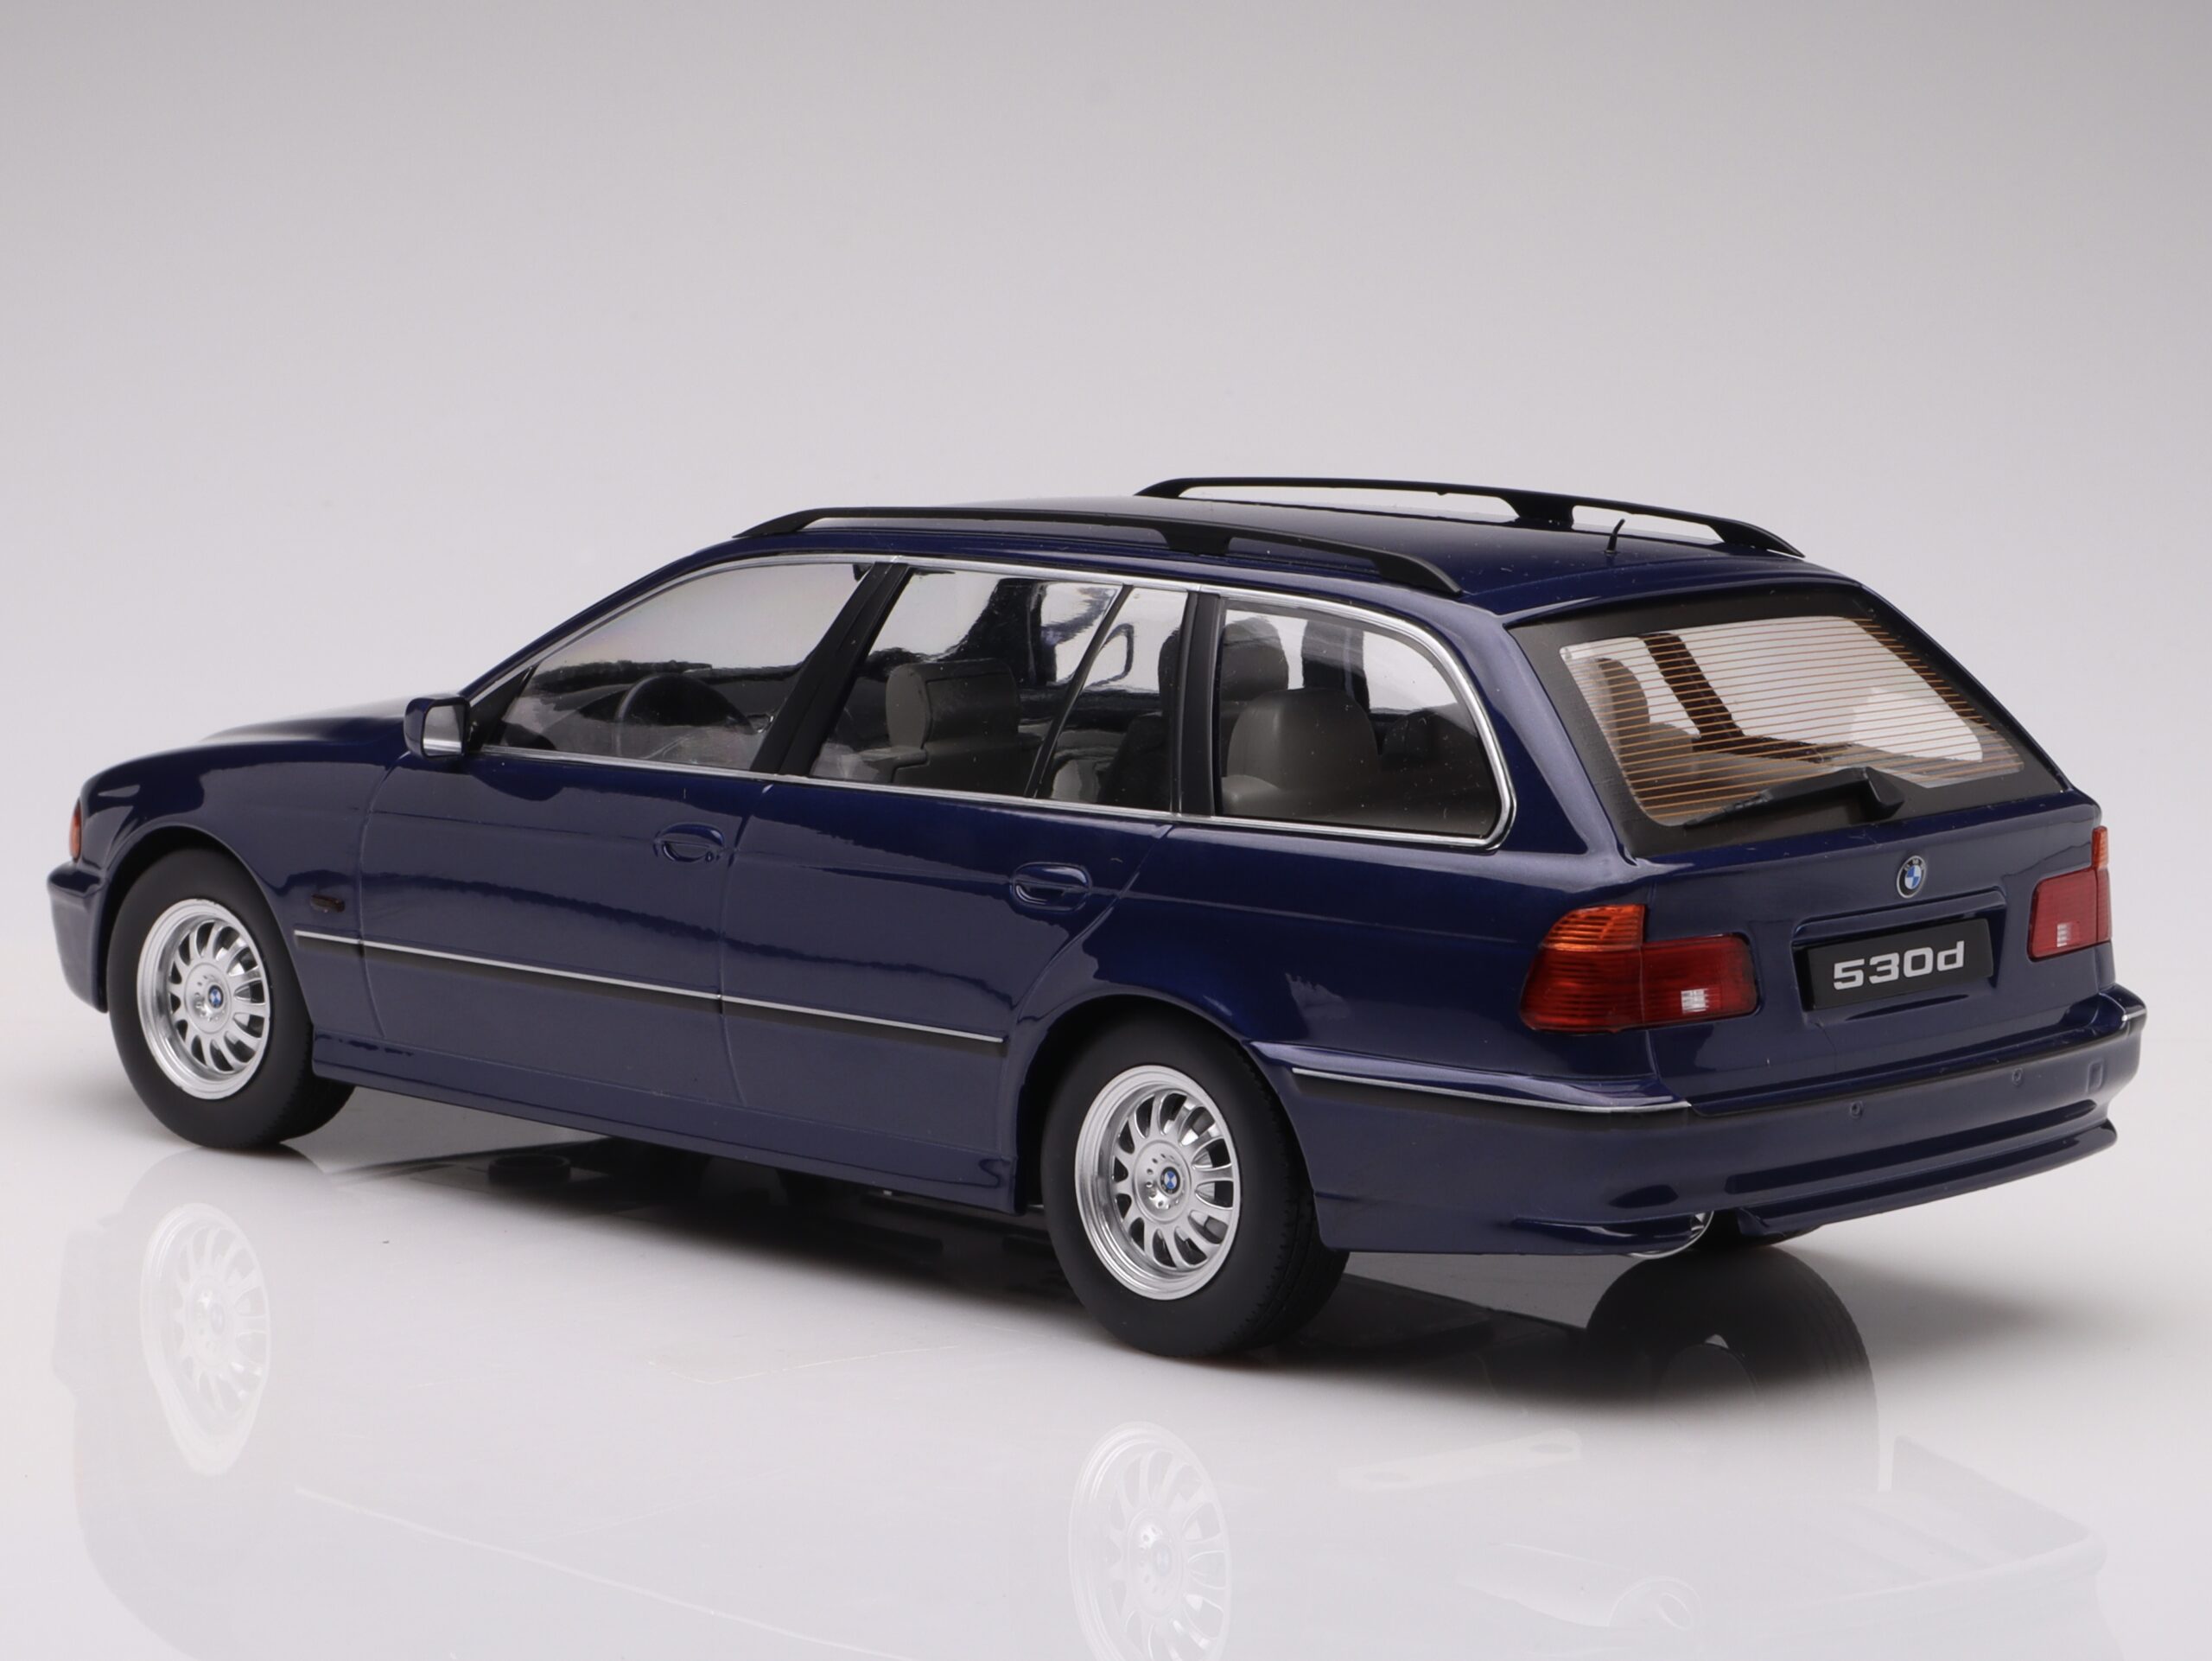 BMW 530d E39 Touring 1998 metallic-blau 1:18